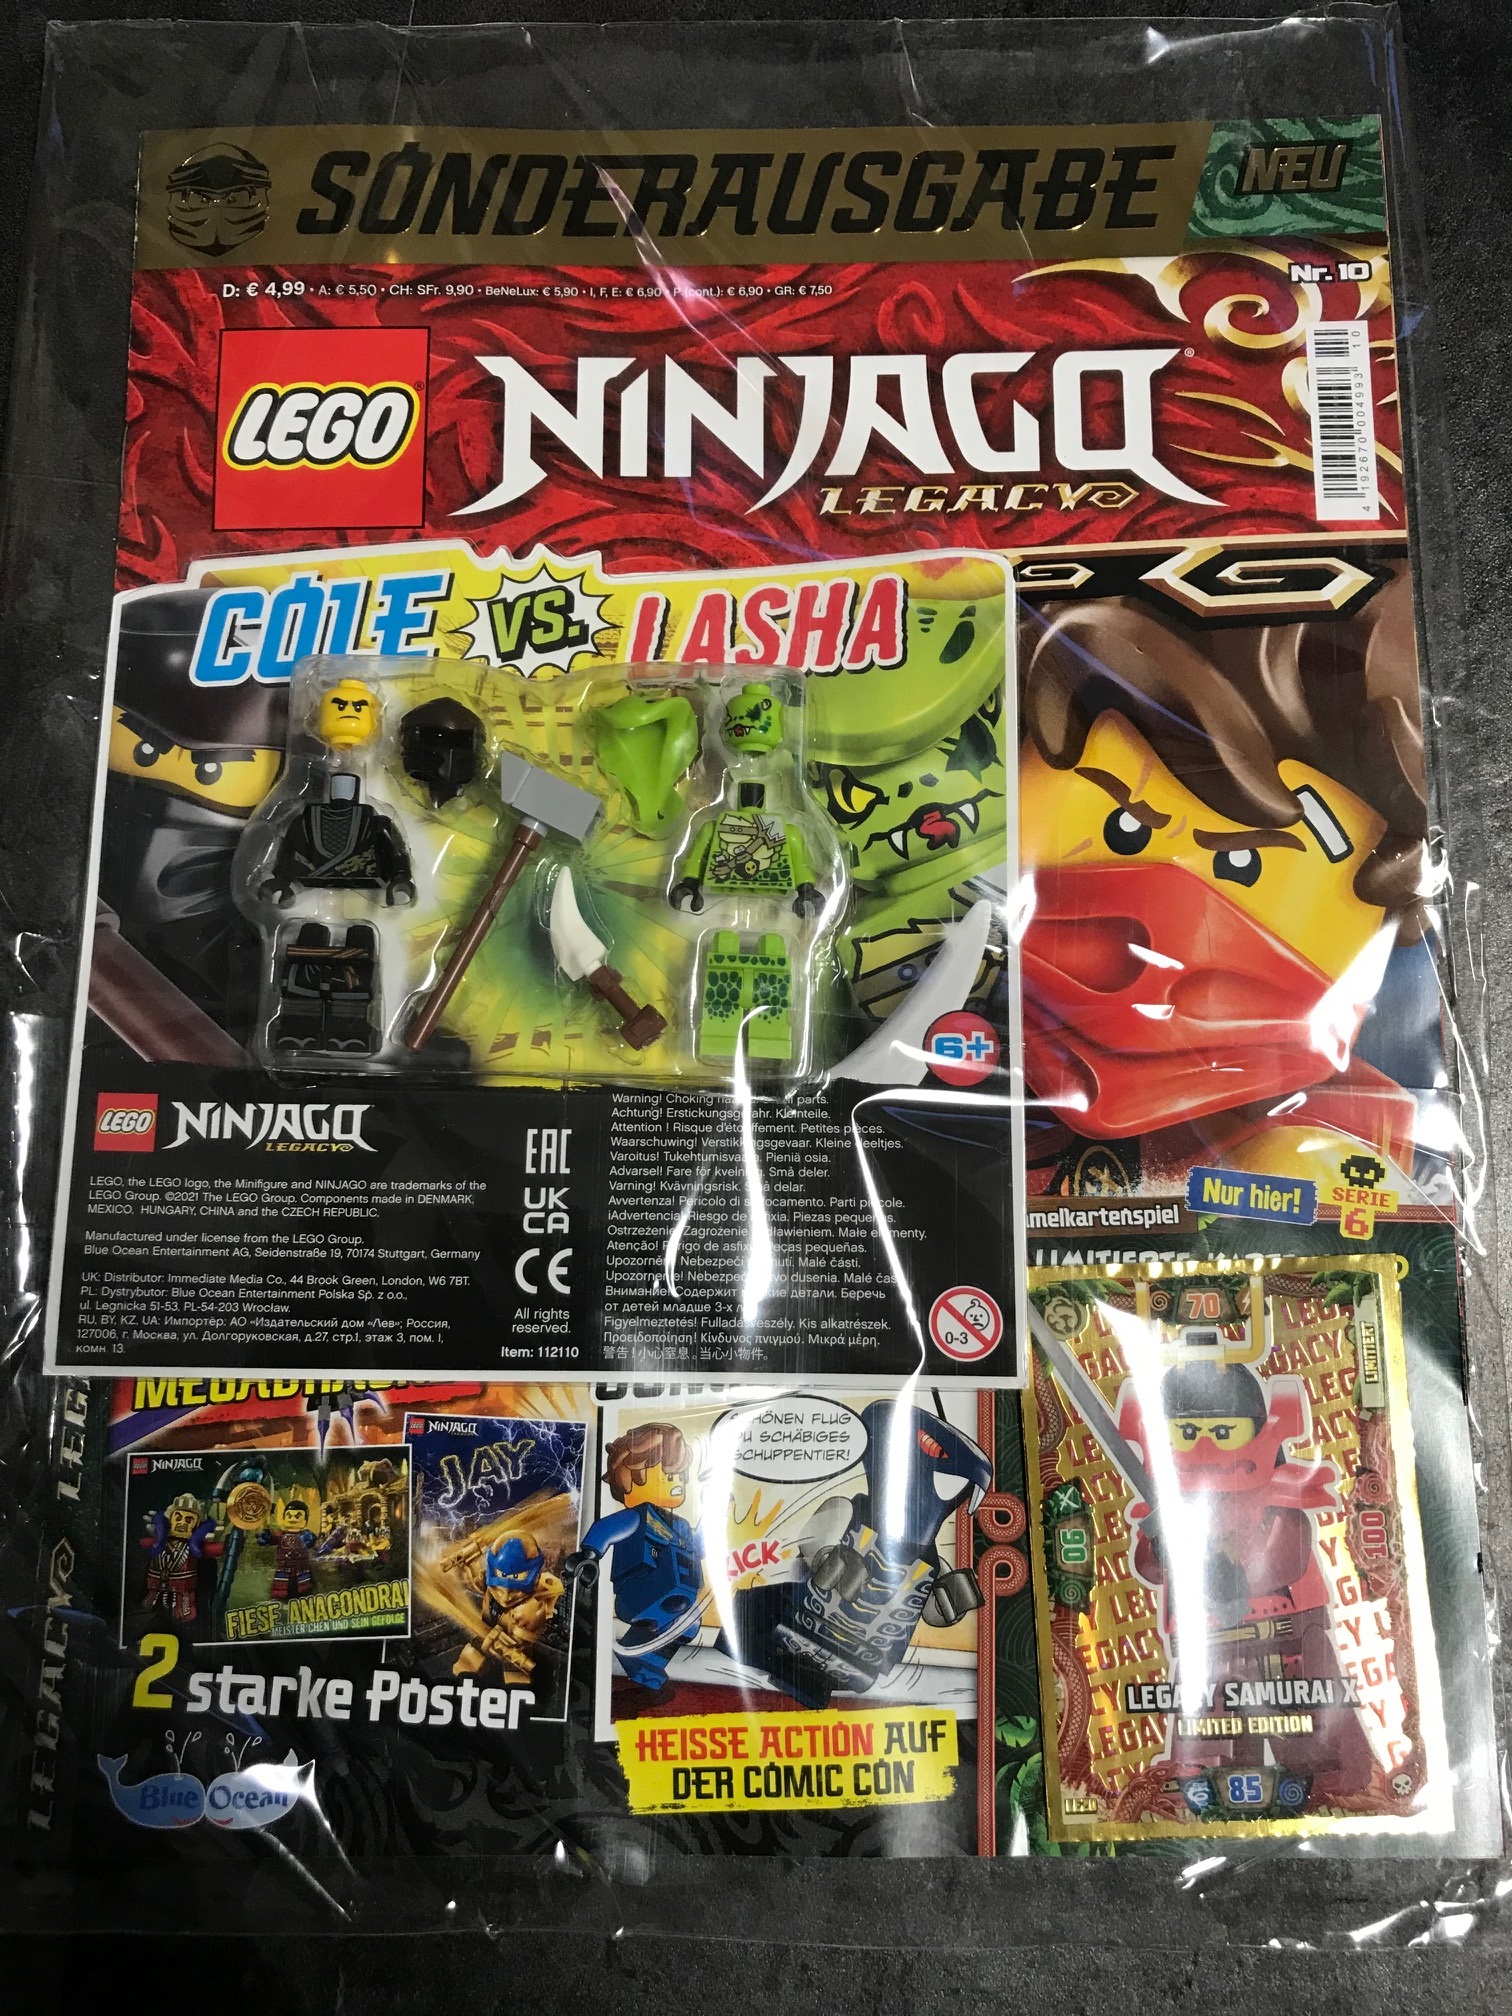 LEGO NINJAGO Legacy Zeitschrift Sonderausgabe Nr.5 mit Poster und Cole vs Nindroid Figur for sale online 